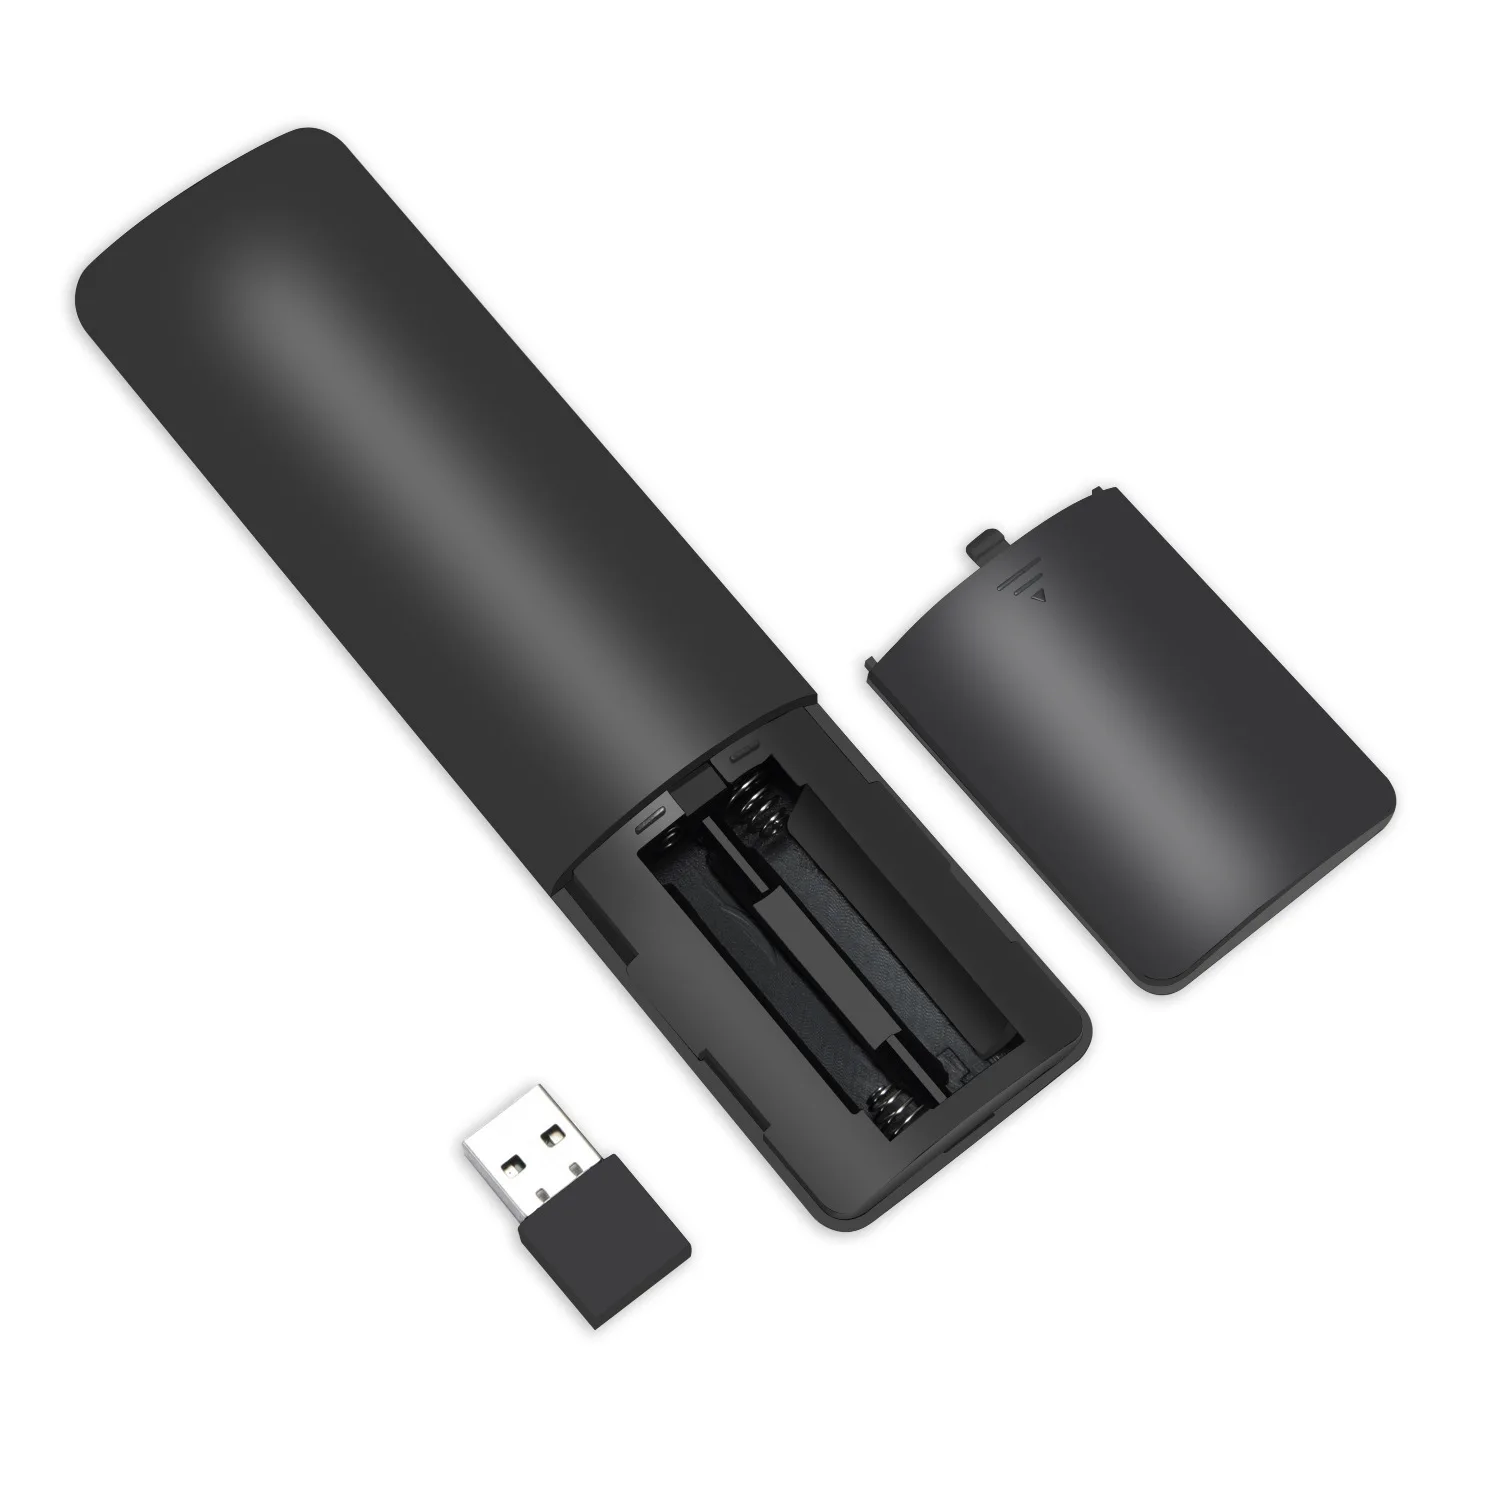 Пульт дистанционного управления 2,4G беспроводной голосовой гироскоп USB ИК микрофон Air mouse для Google tv Box Smart tv PC Pad